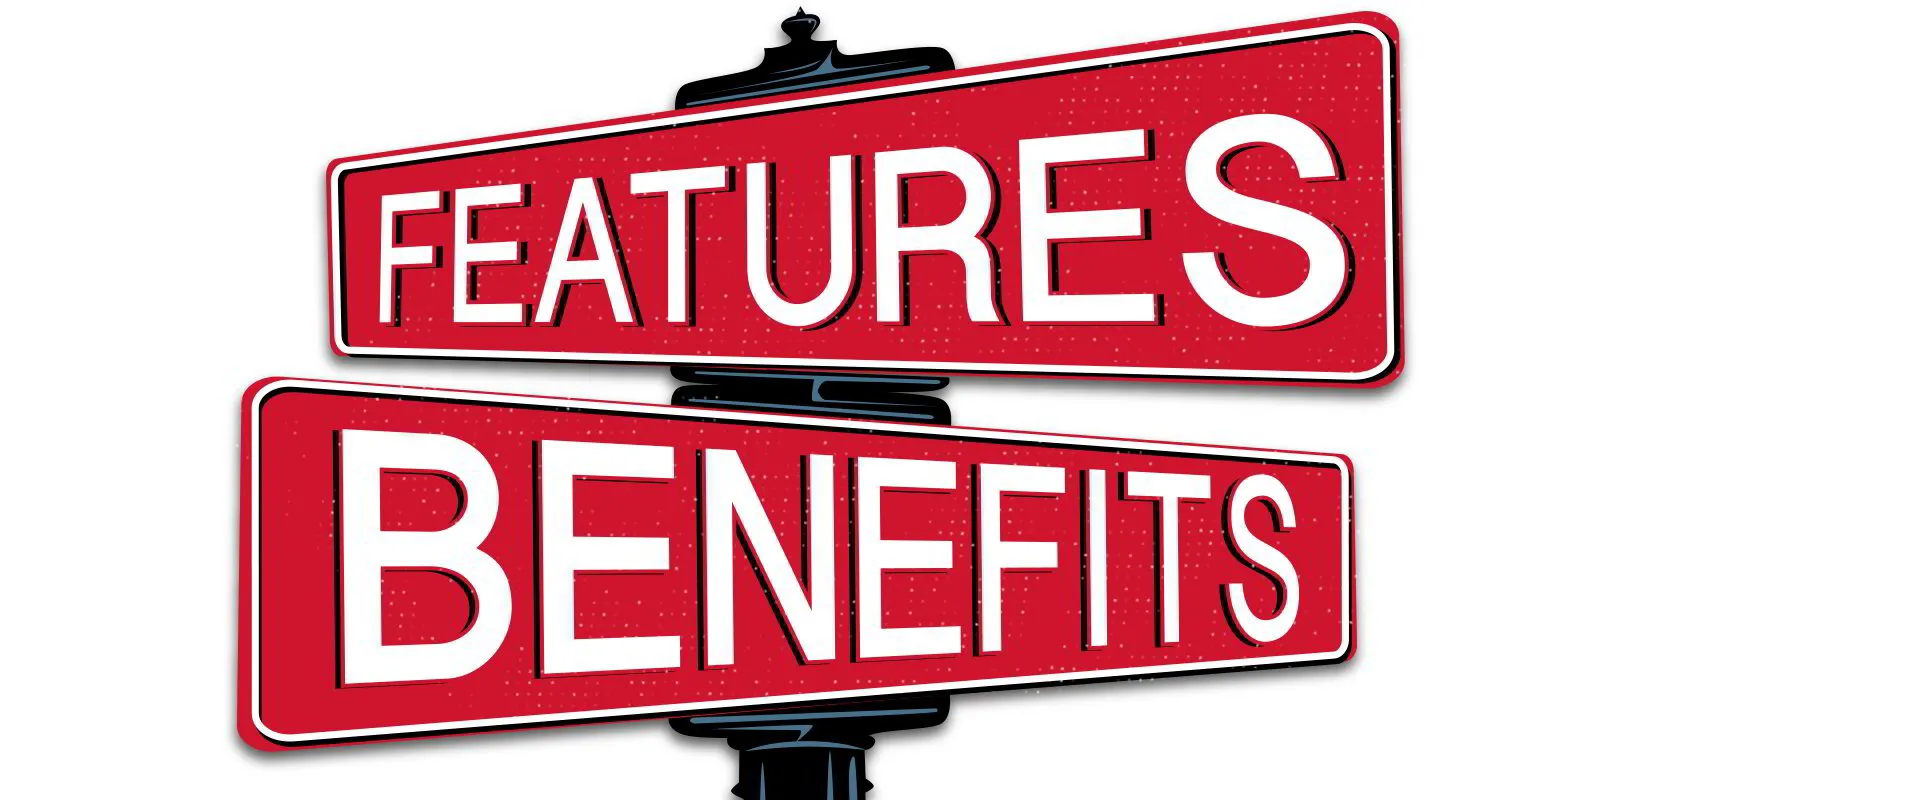 Features benefits